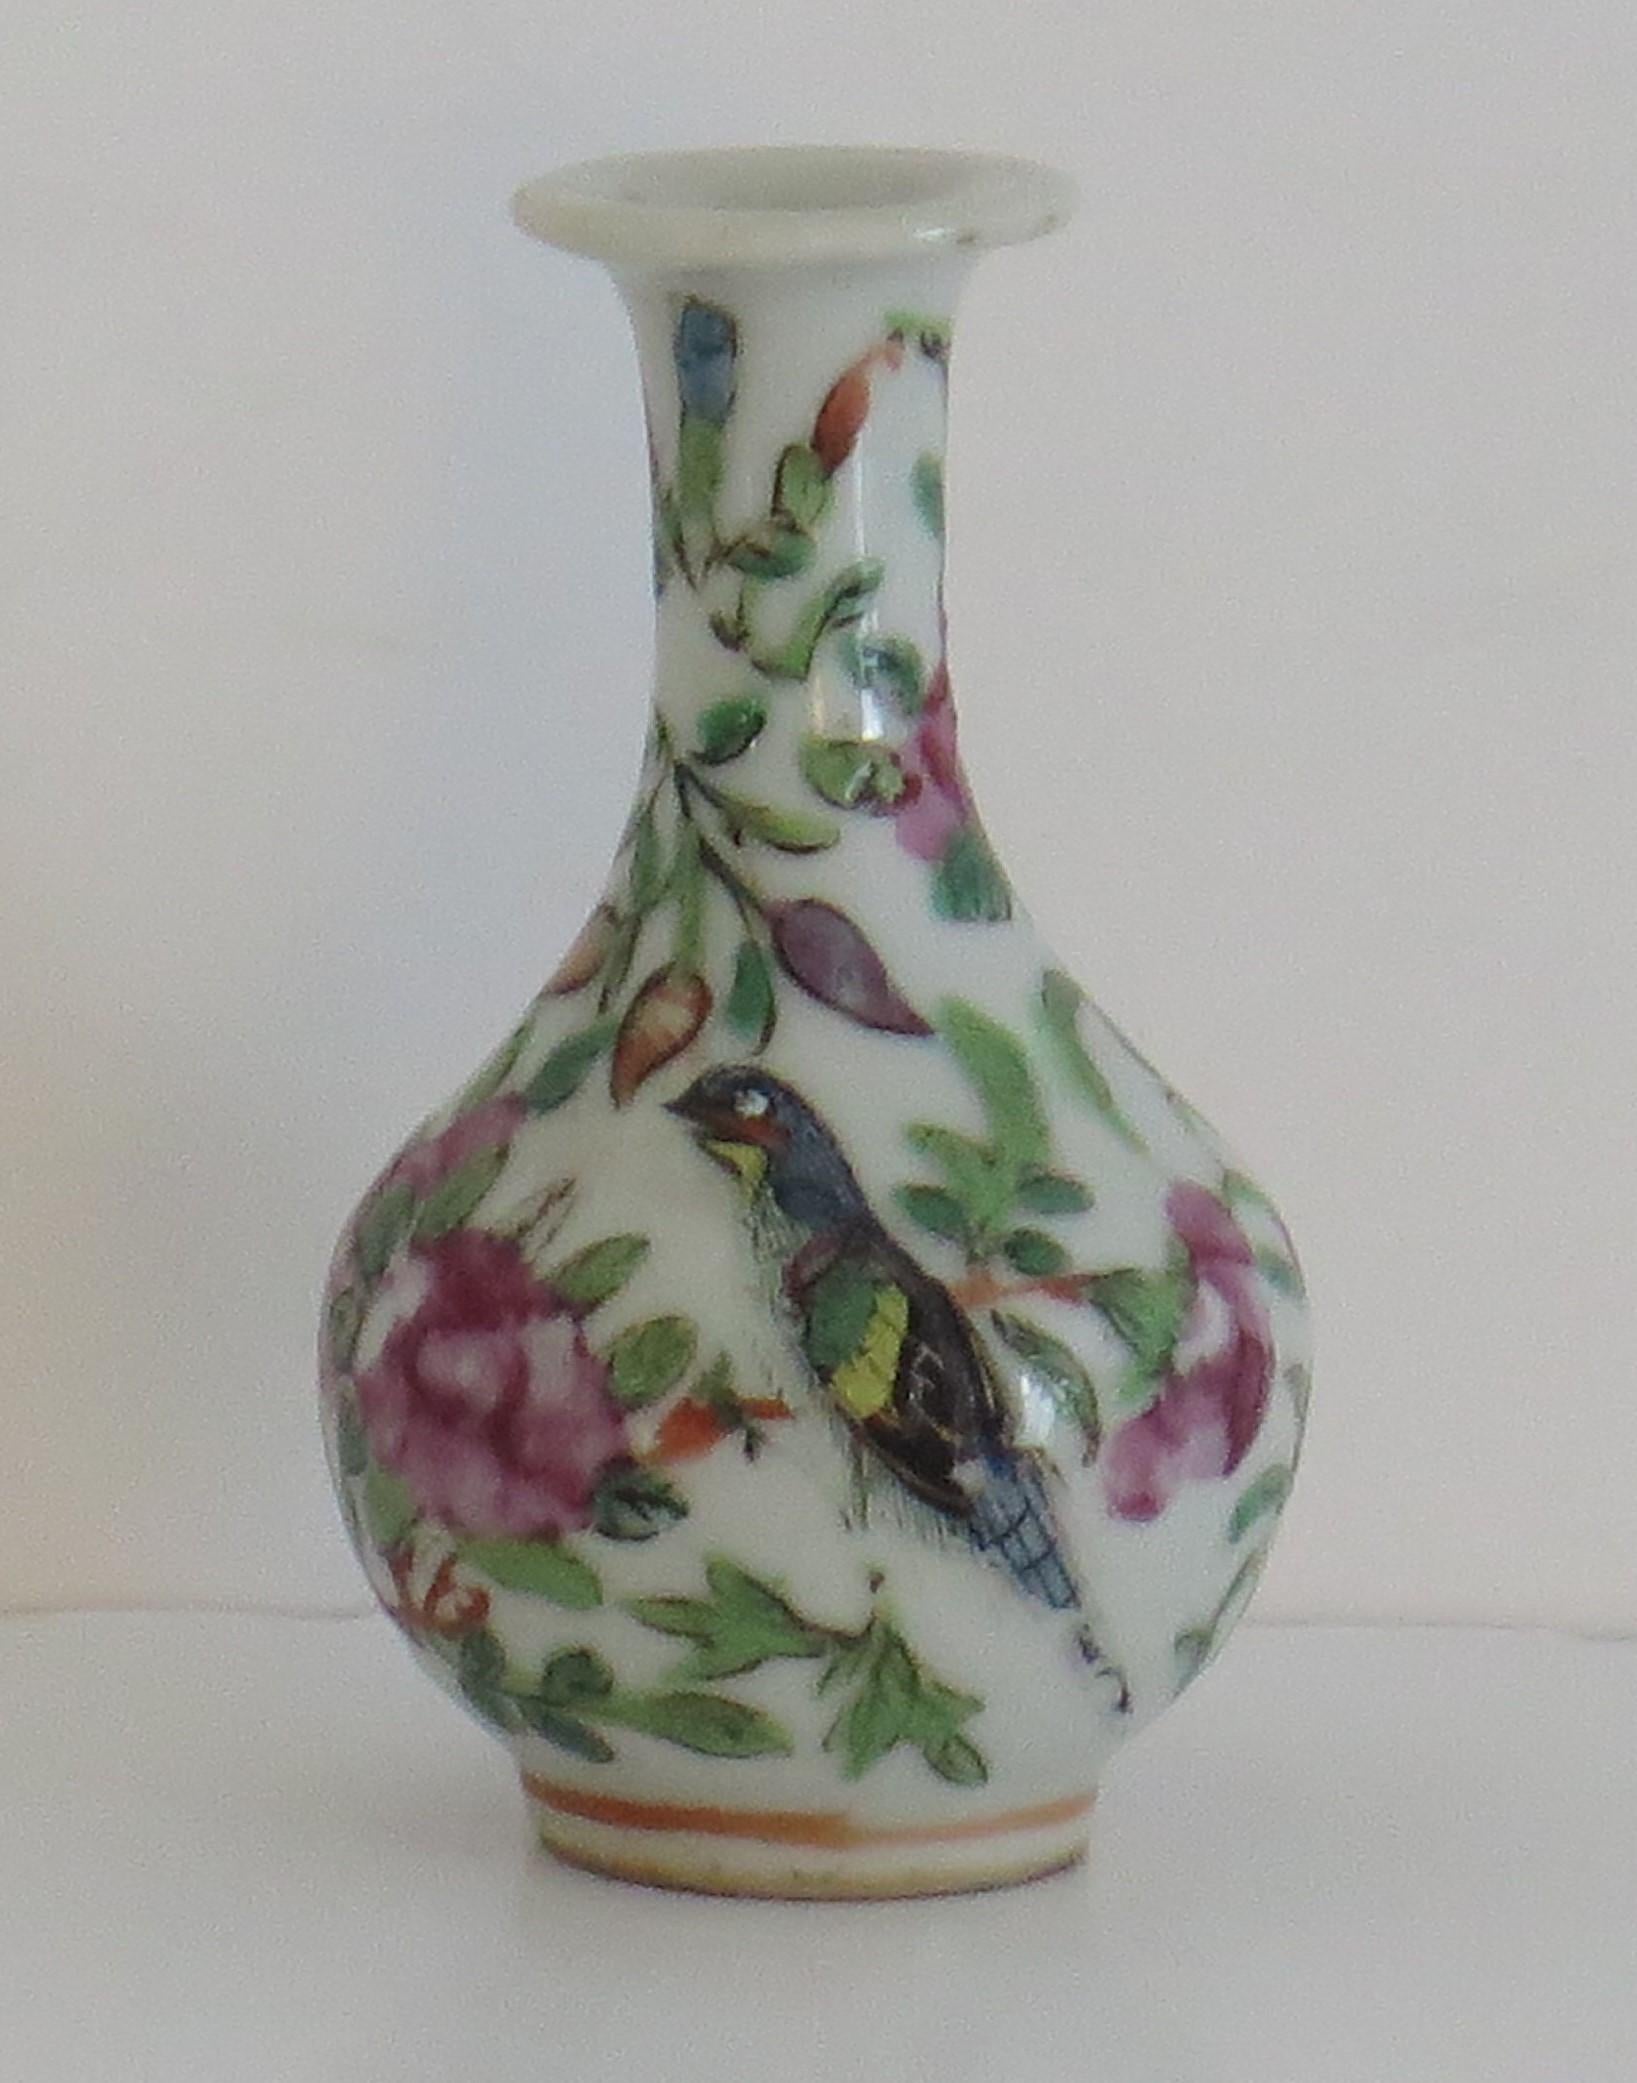 Il s'agit d'un bon vase décoratif en porcelaine de la famille rose, export de Chine, Canton impérial, petit ou en forme de bourgeon, que nous datons du milieu du XIXe siècle, dynastie Qing, vers 1850.

Le vase a une bonne forme de balustre avec un